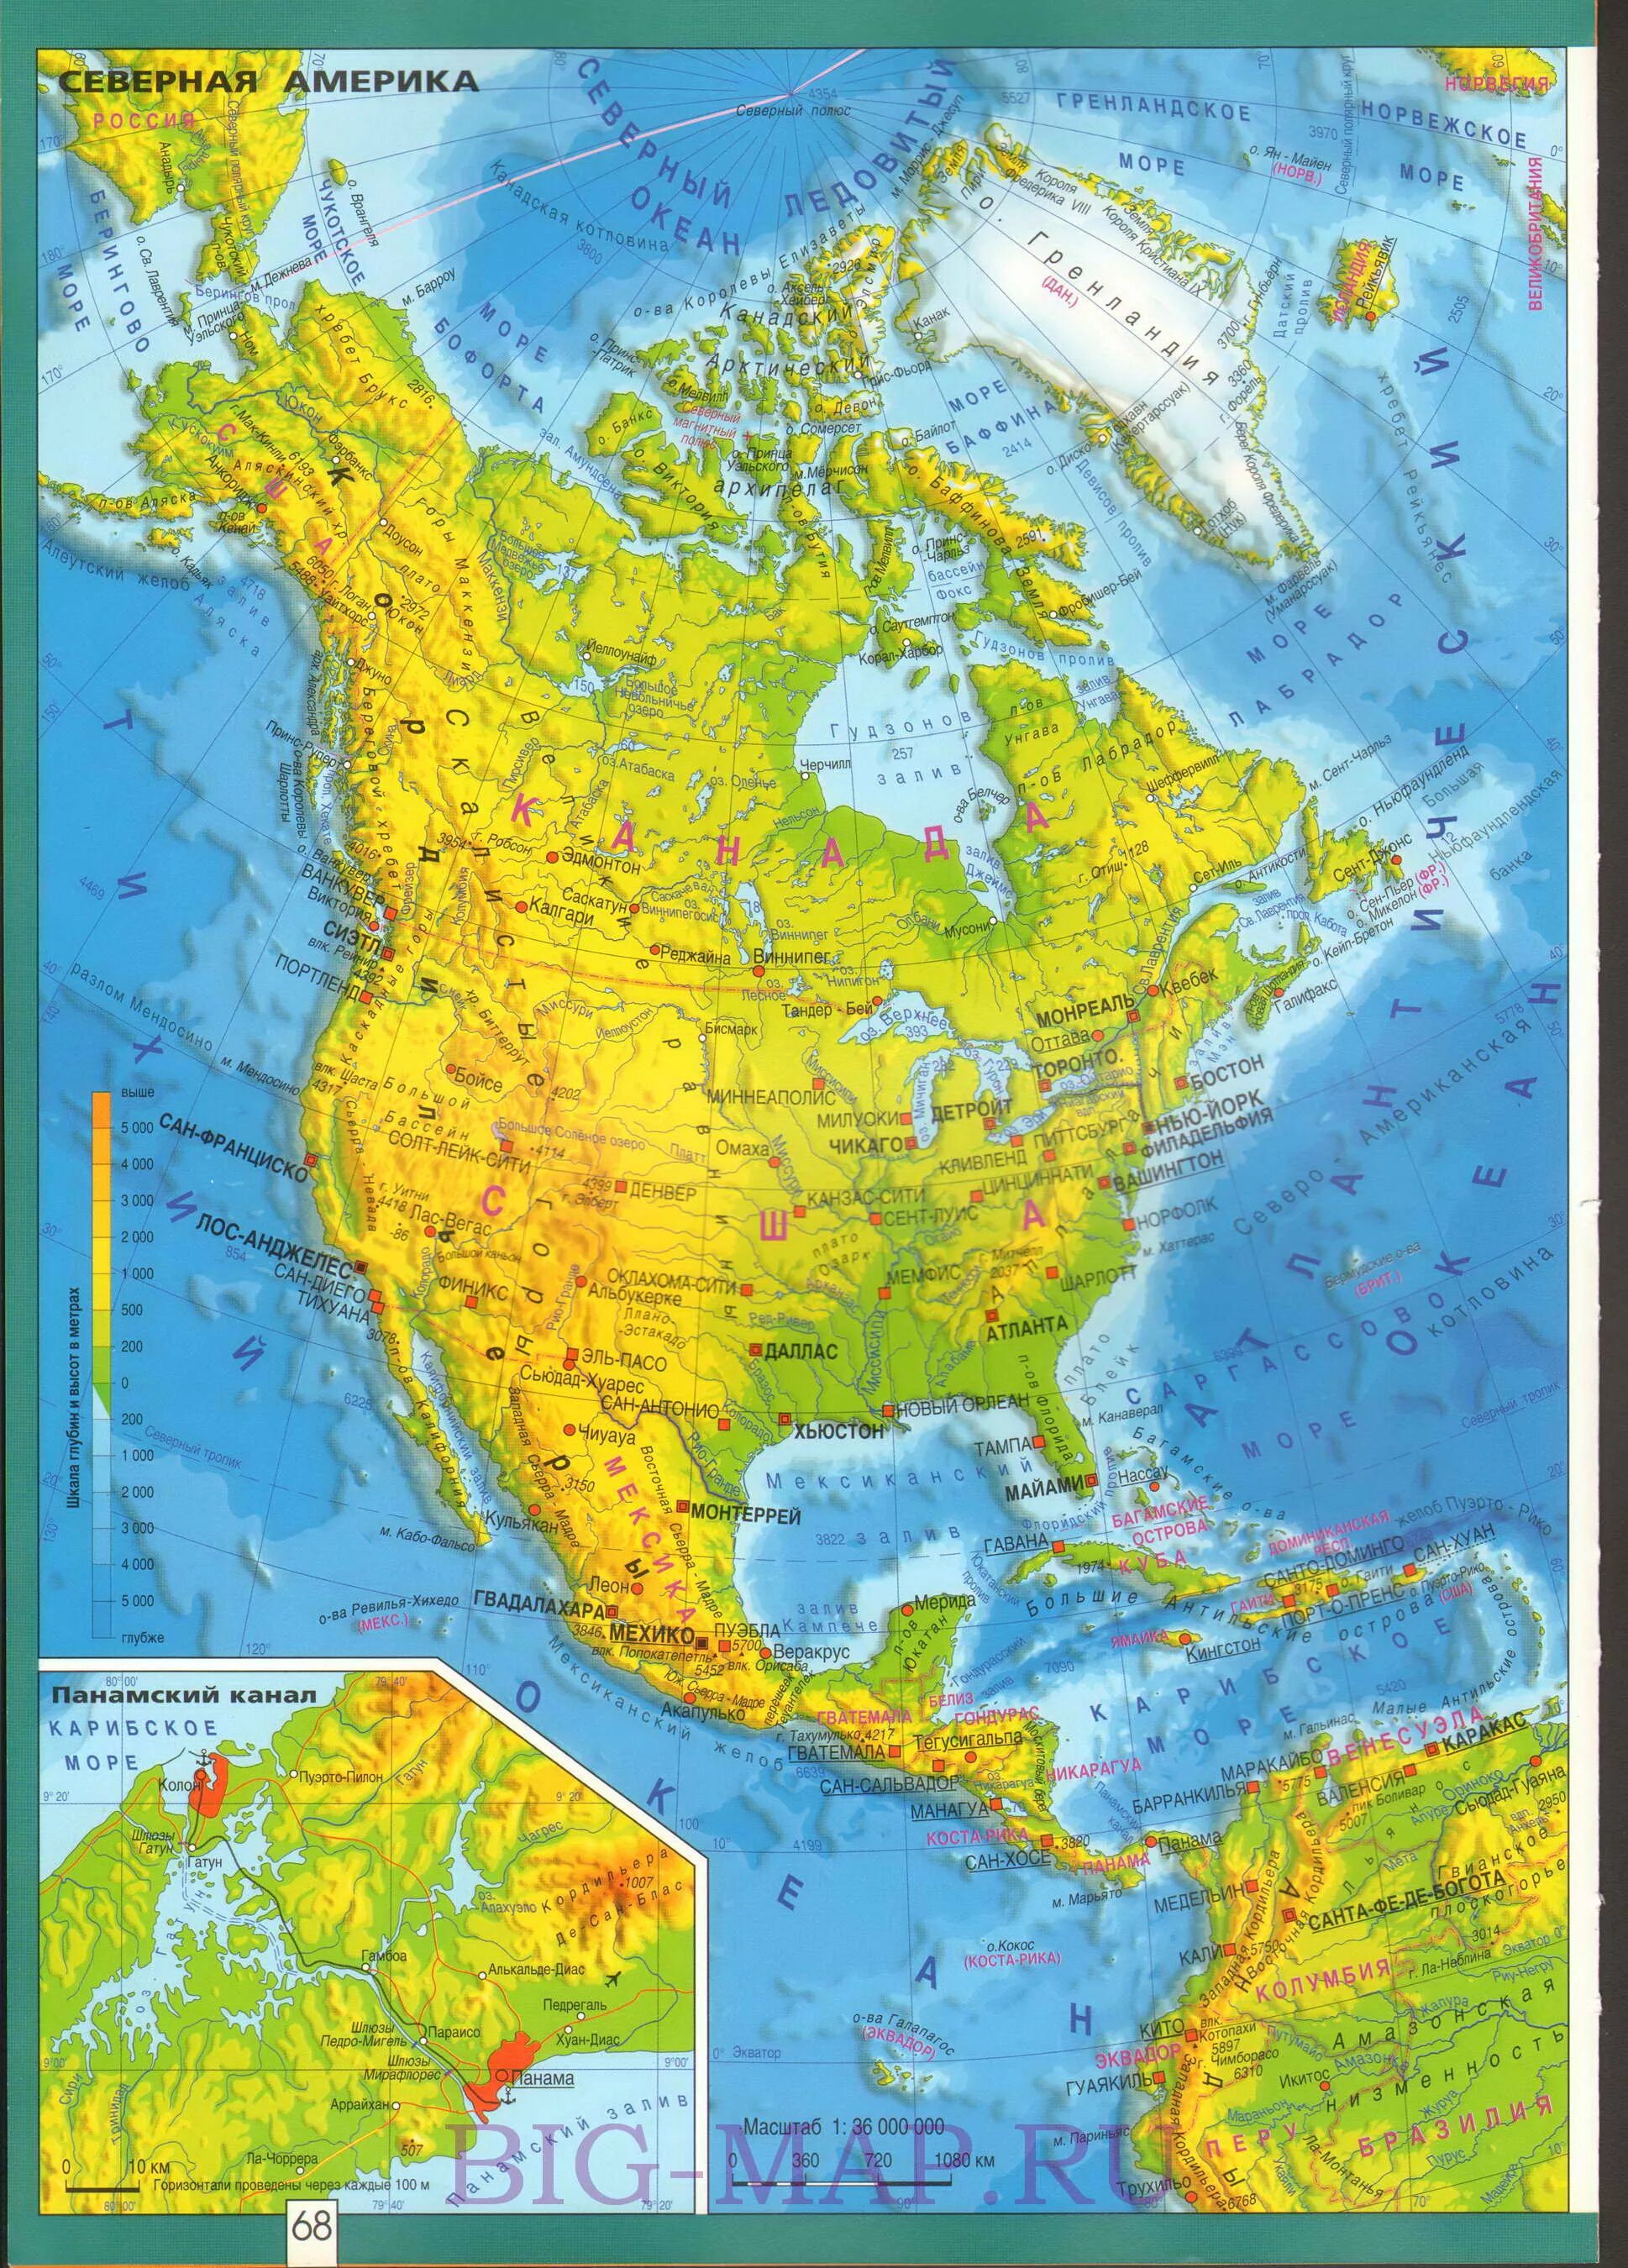 Северная америка географическая карта на русском. Лаврентийская возвышенность на карте Северной Америки. Карта Северной Америки географическая крупная. Карта Северной Америки физическая крупная. Физ карта Северной Америки.